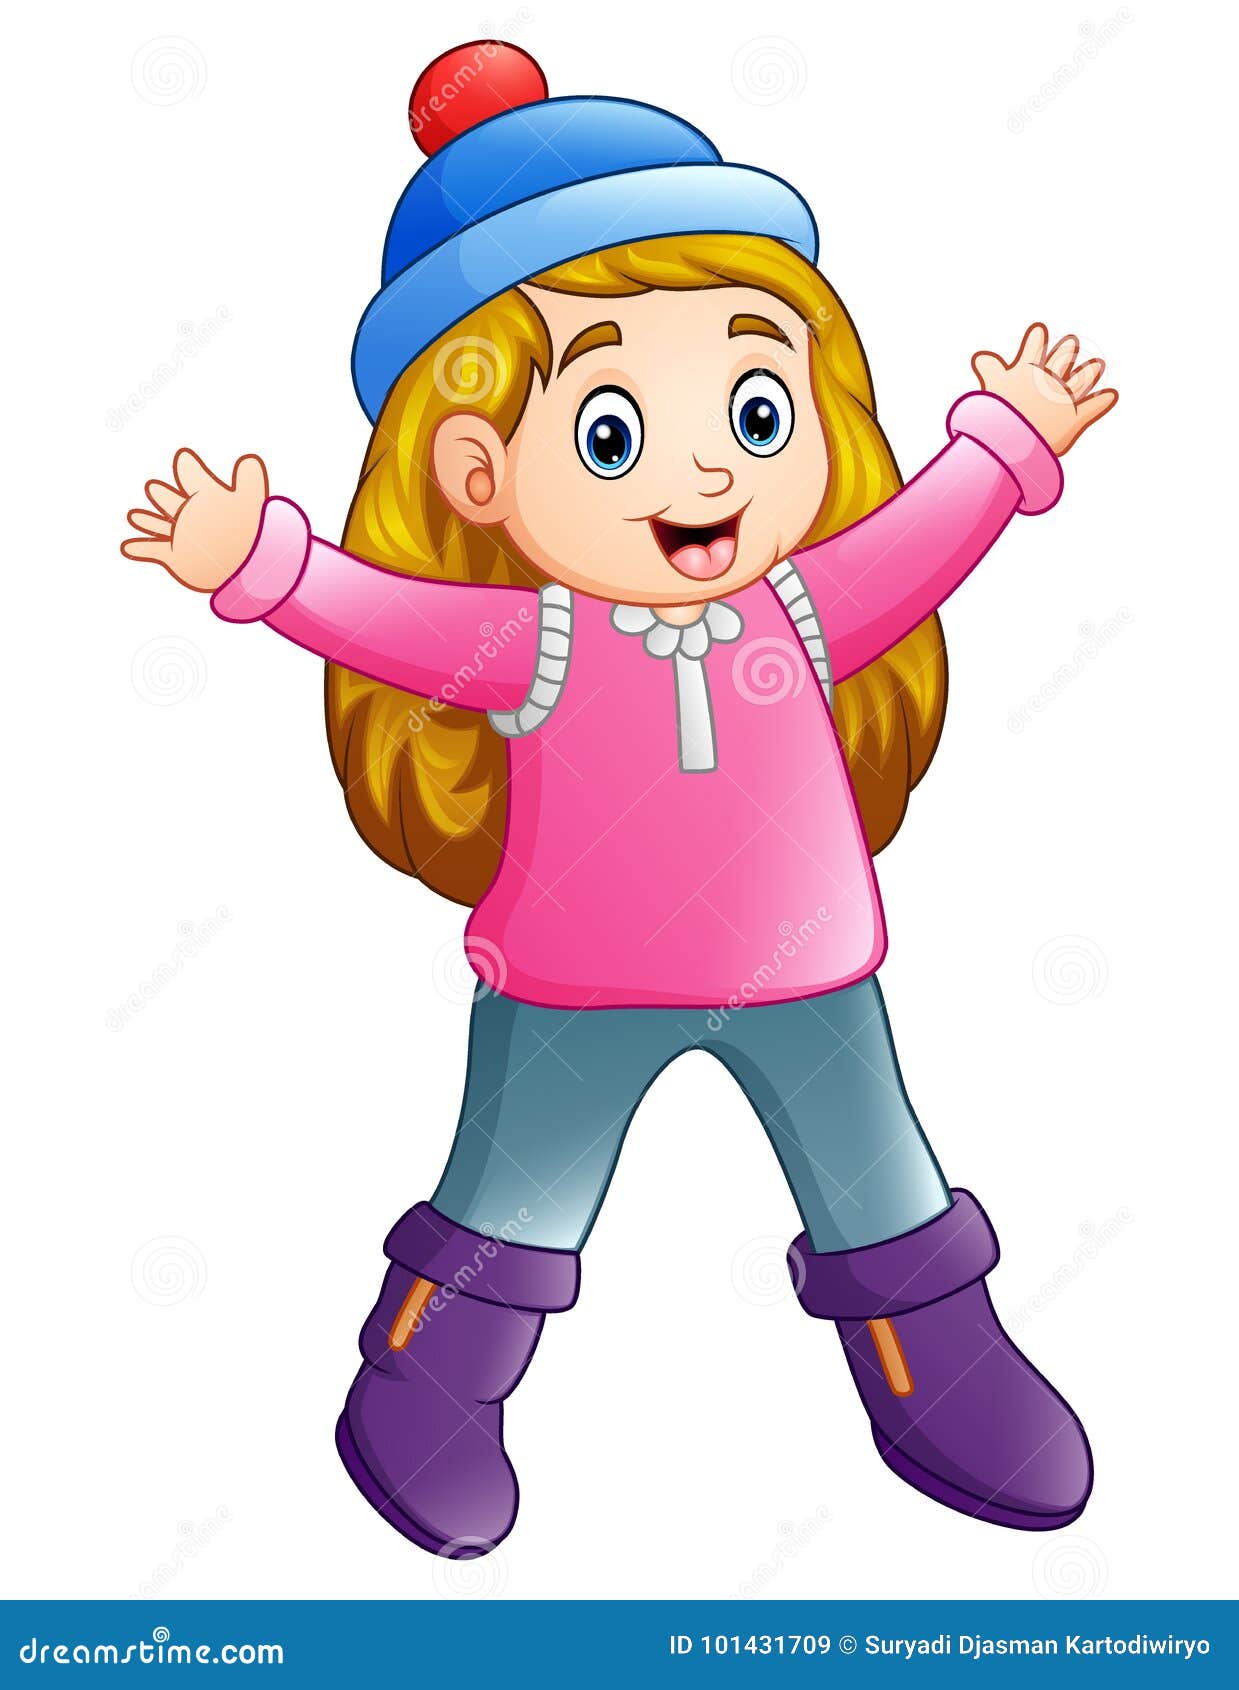 She is wearing a long. Девочка в зимней одежде рисунок. Мультяшная девочка в зимней одежде. Нарисовать девочку в зимней одежде. Зимняя одежда рисунок для детей.